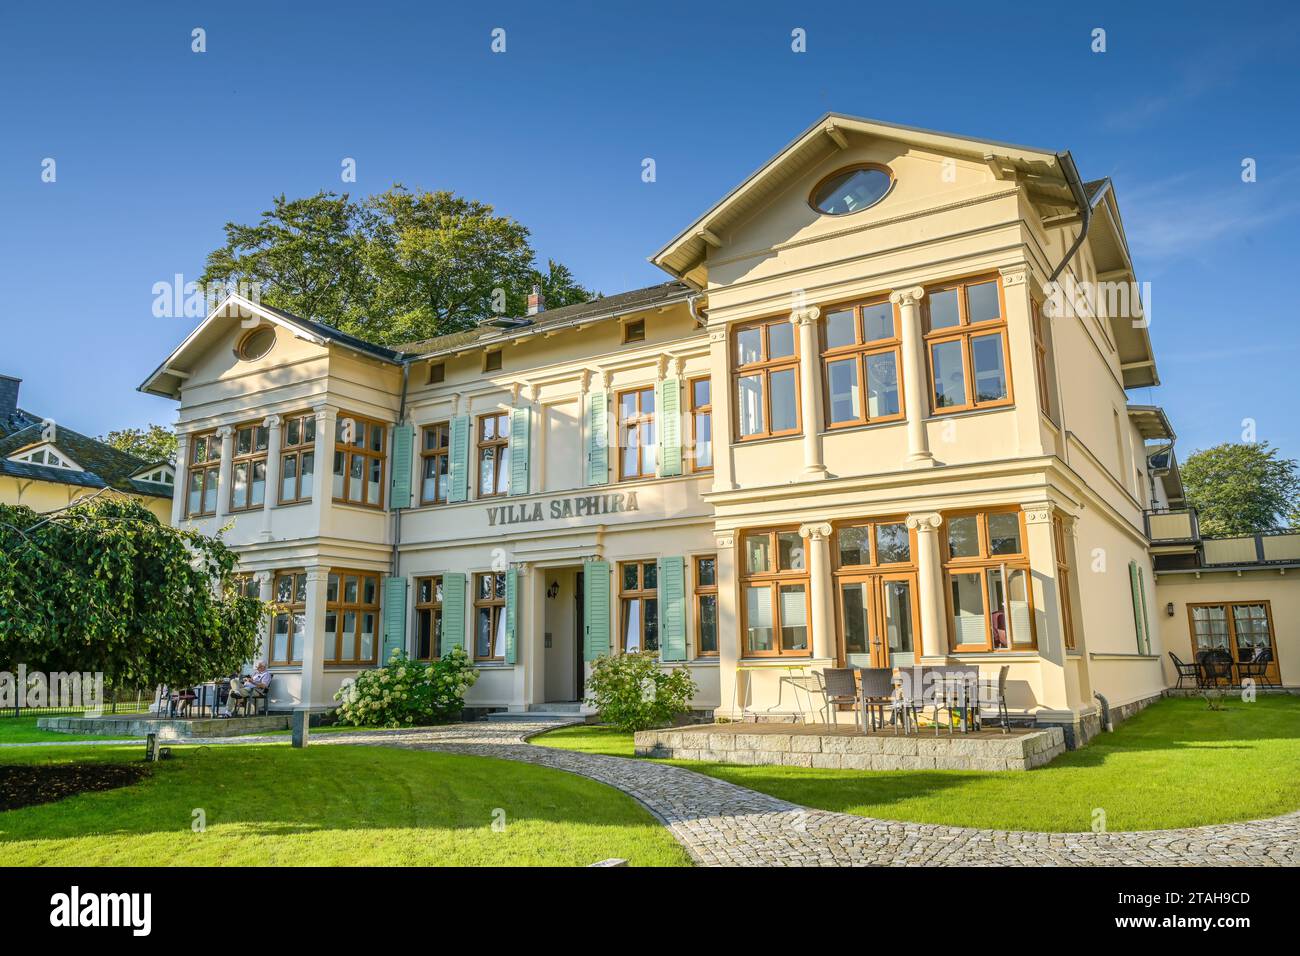 Villa Saphira, Delbrückstraße, Heringsdorf, Usedom, Mecklenburg-Vorpommern, Deutschland Banque D'Images